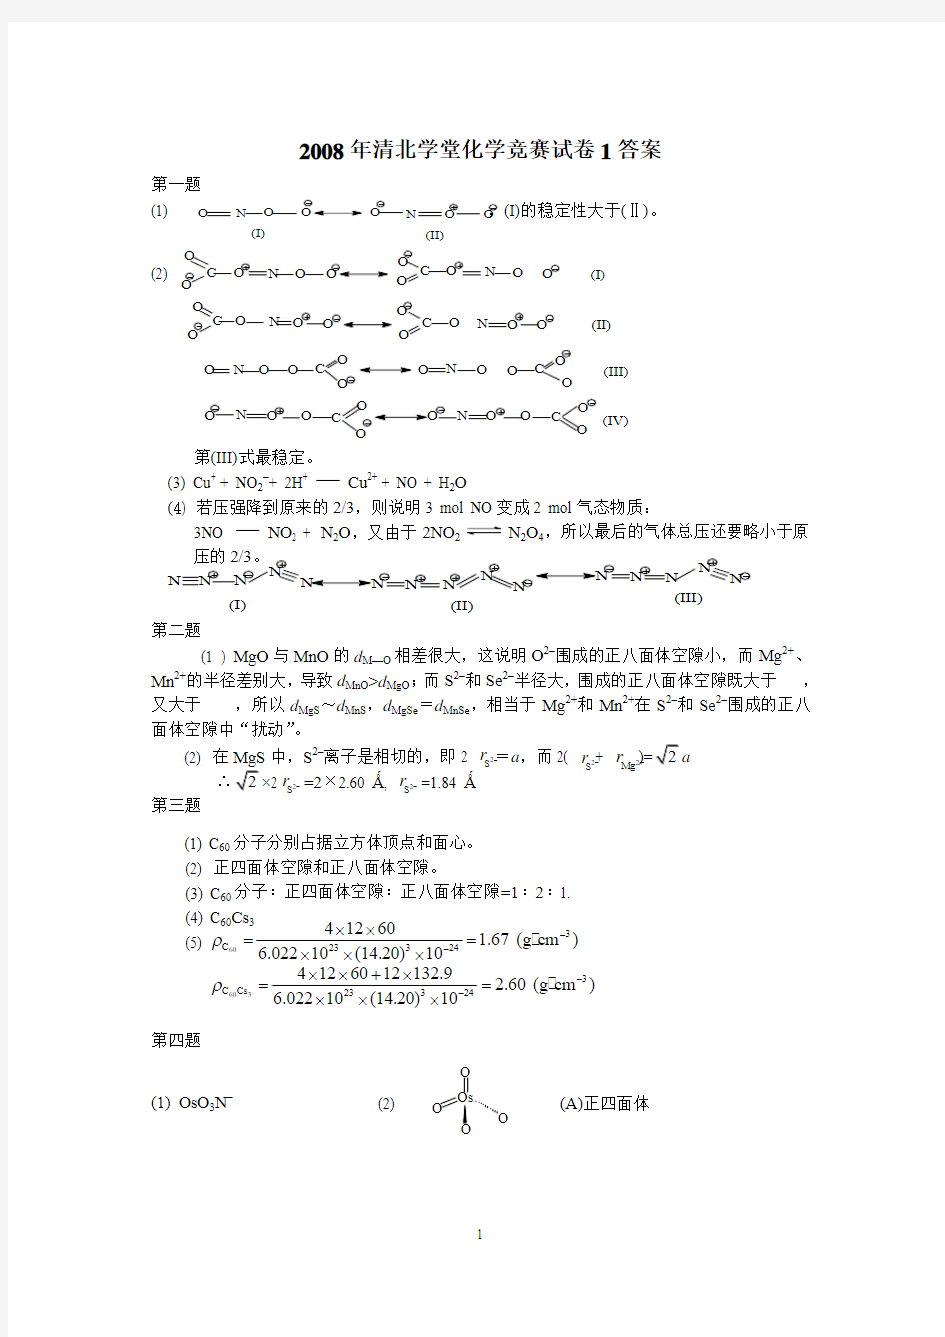 2008年清北学堂化学竞赛试卷1答案